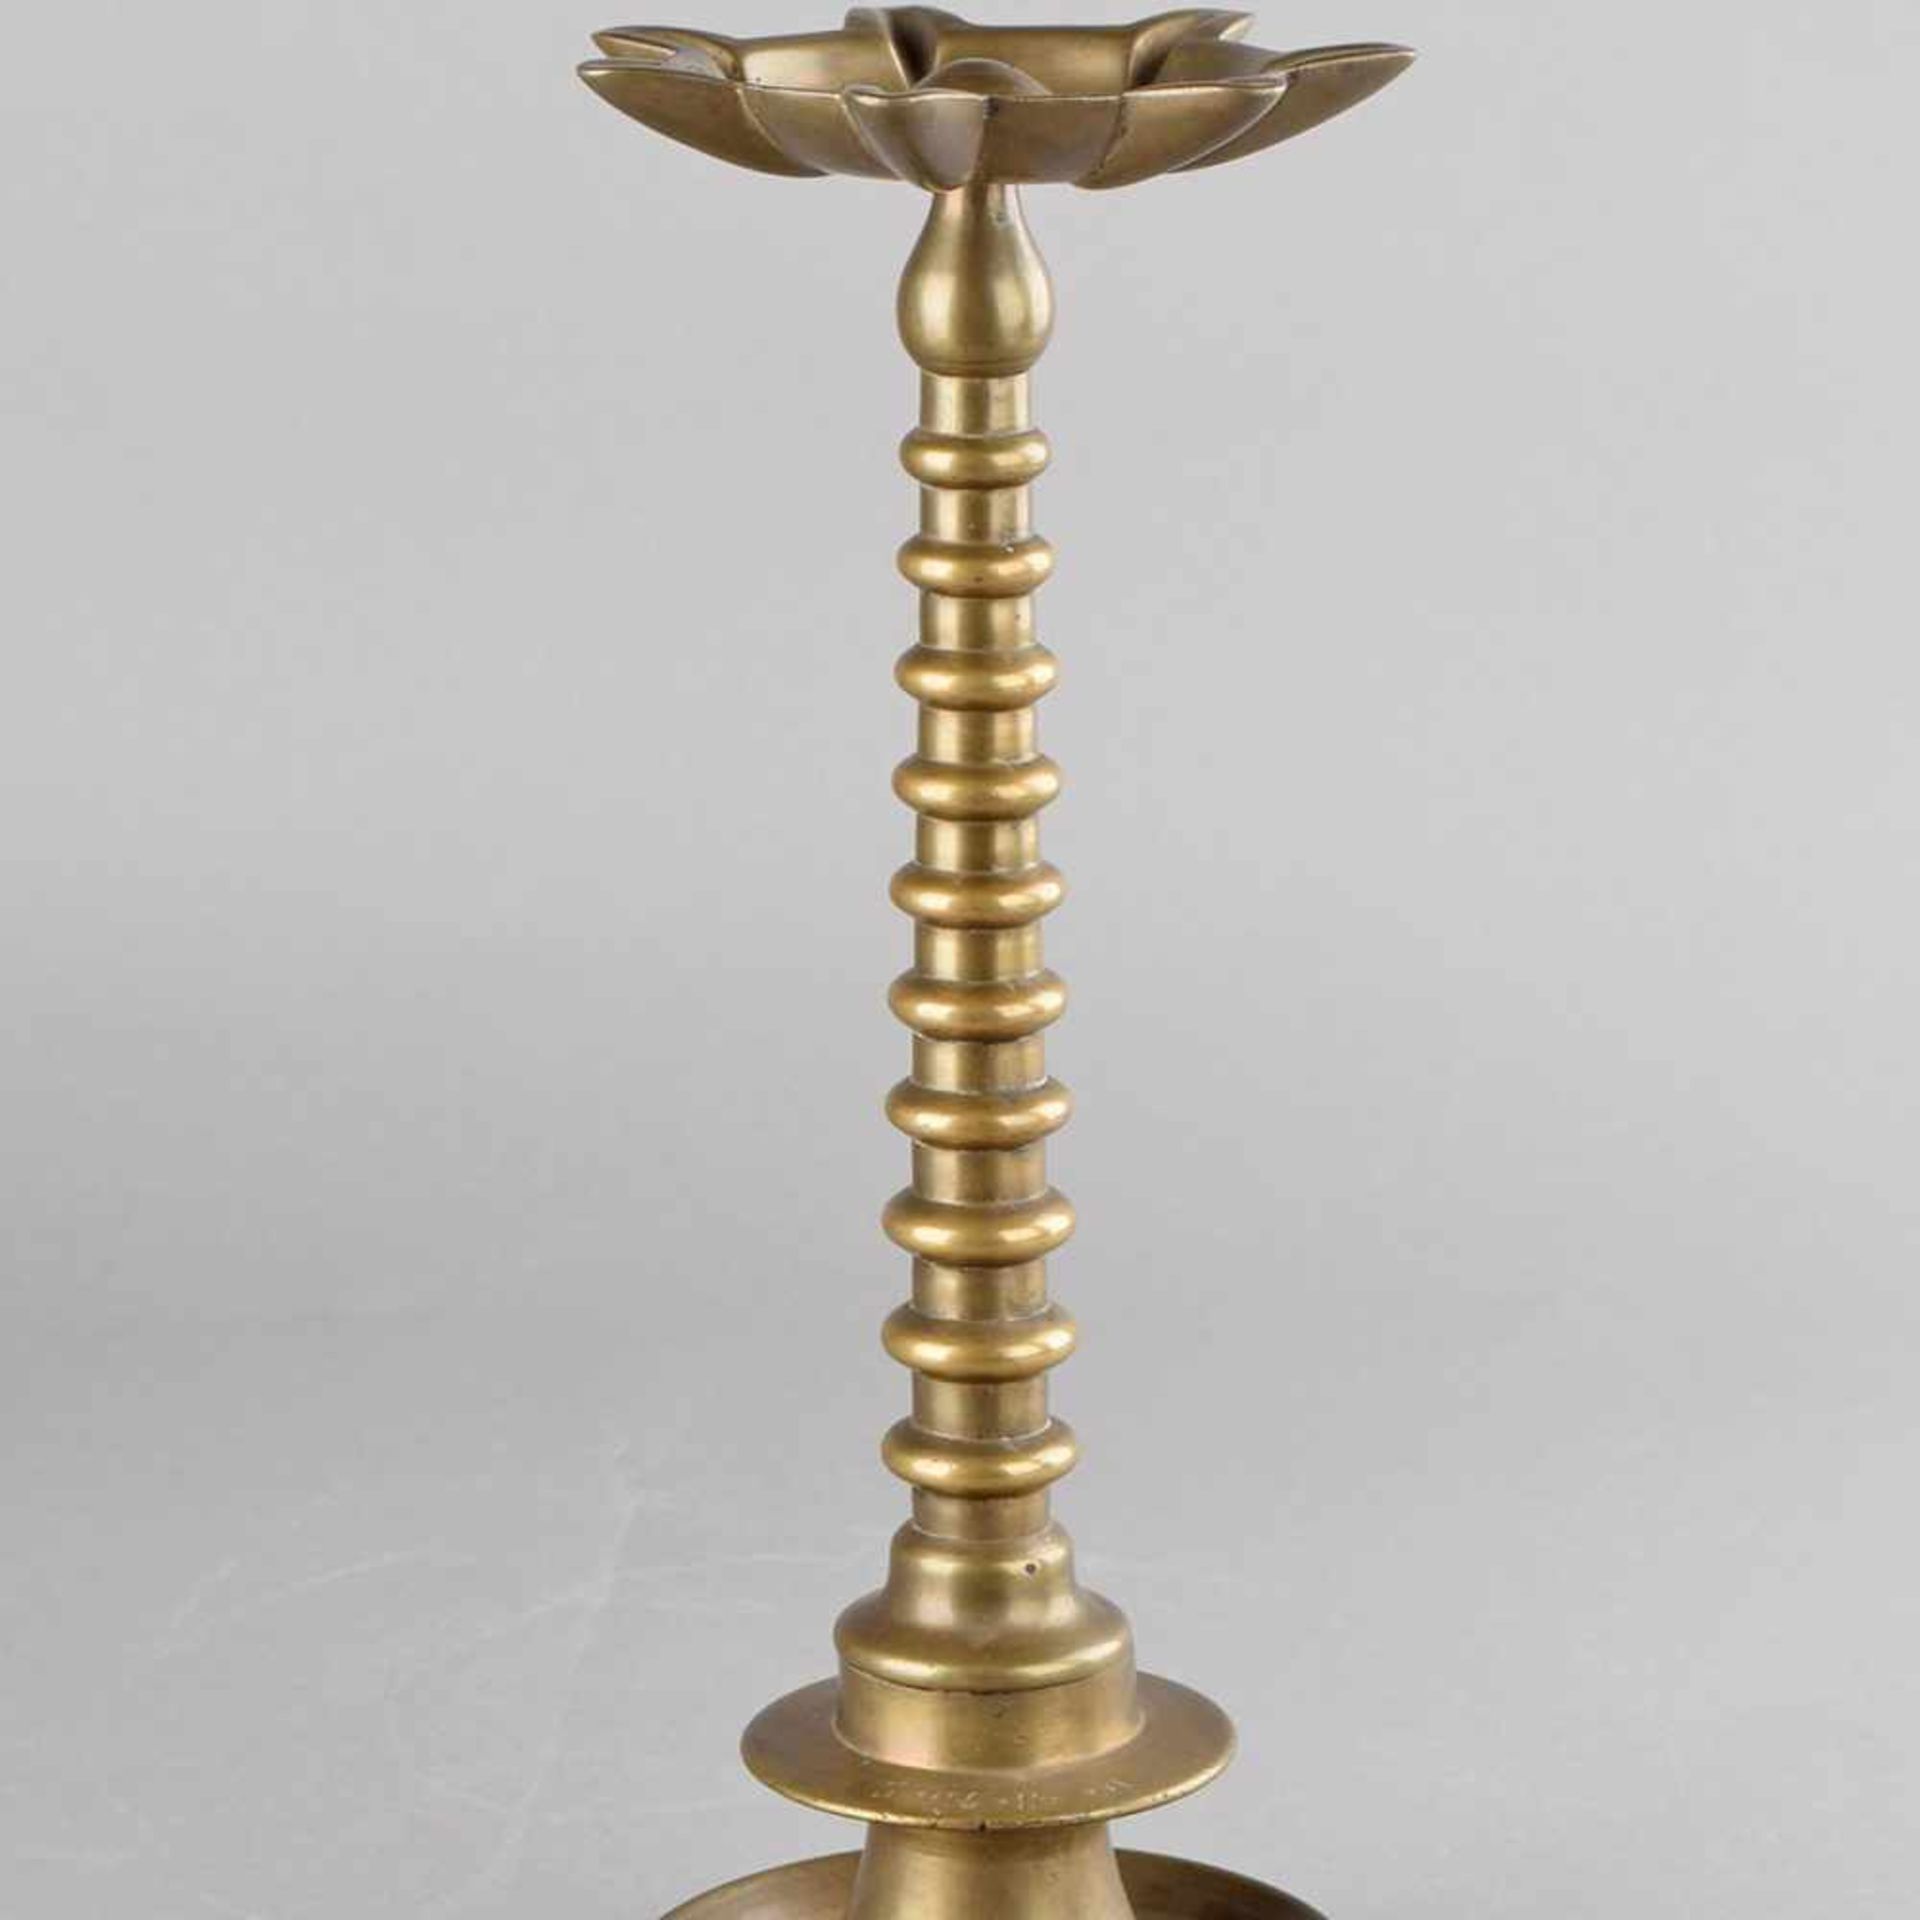 Chanukka-Leuchter Bronze, profilierter Rundfuß, in Manschette hebräische Schrift, schlanker Schaft